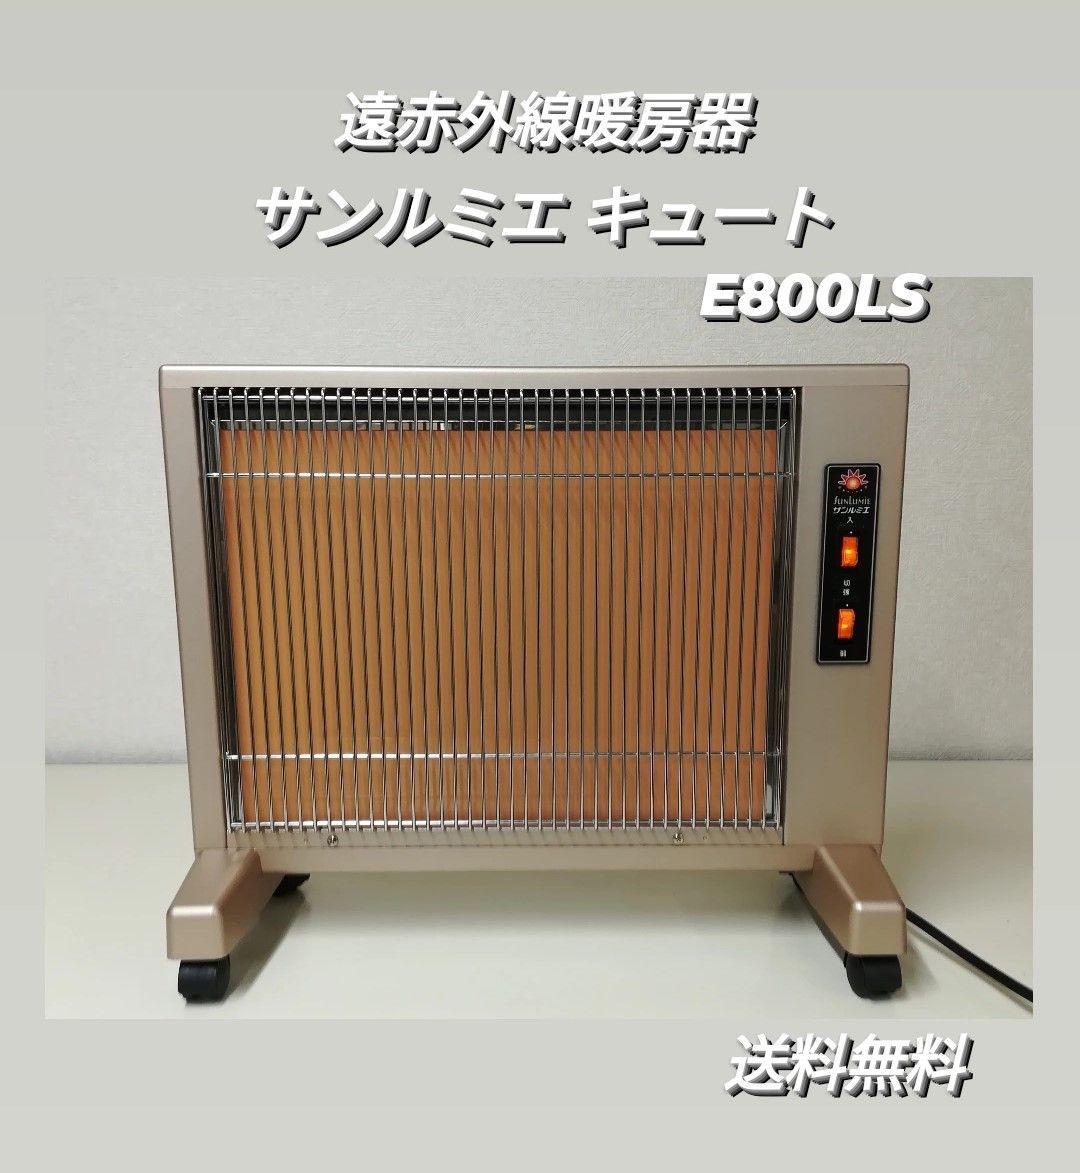 ☆サンルミエ キュート E800LS 遠赤外線暖房器 日本遠赤外線株式会社 